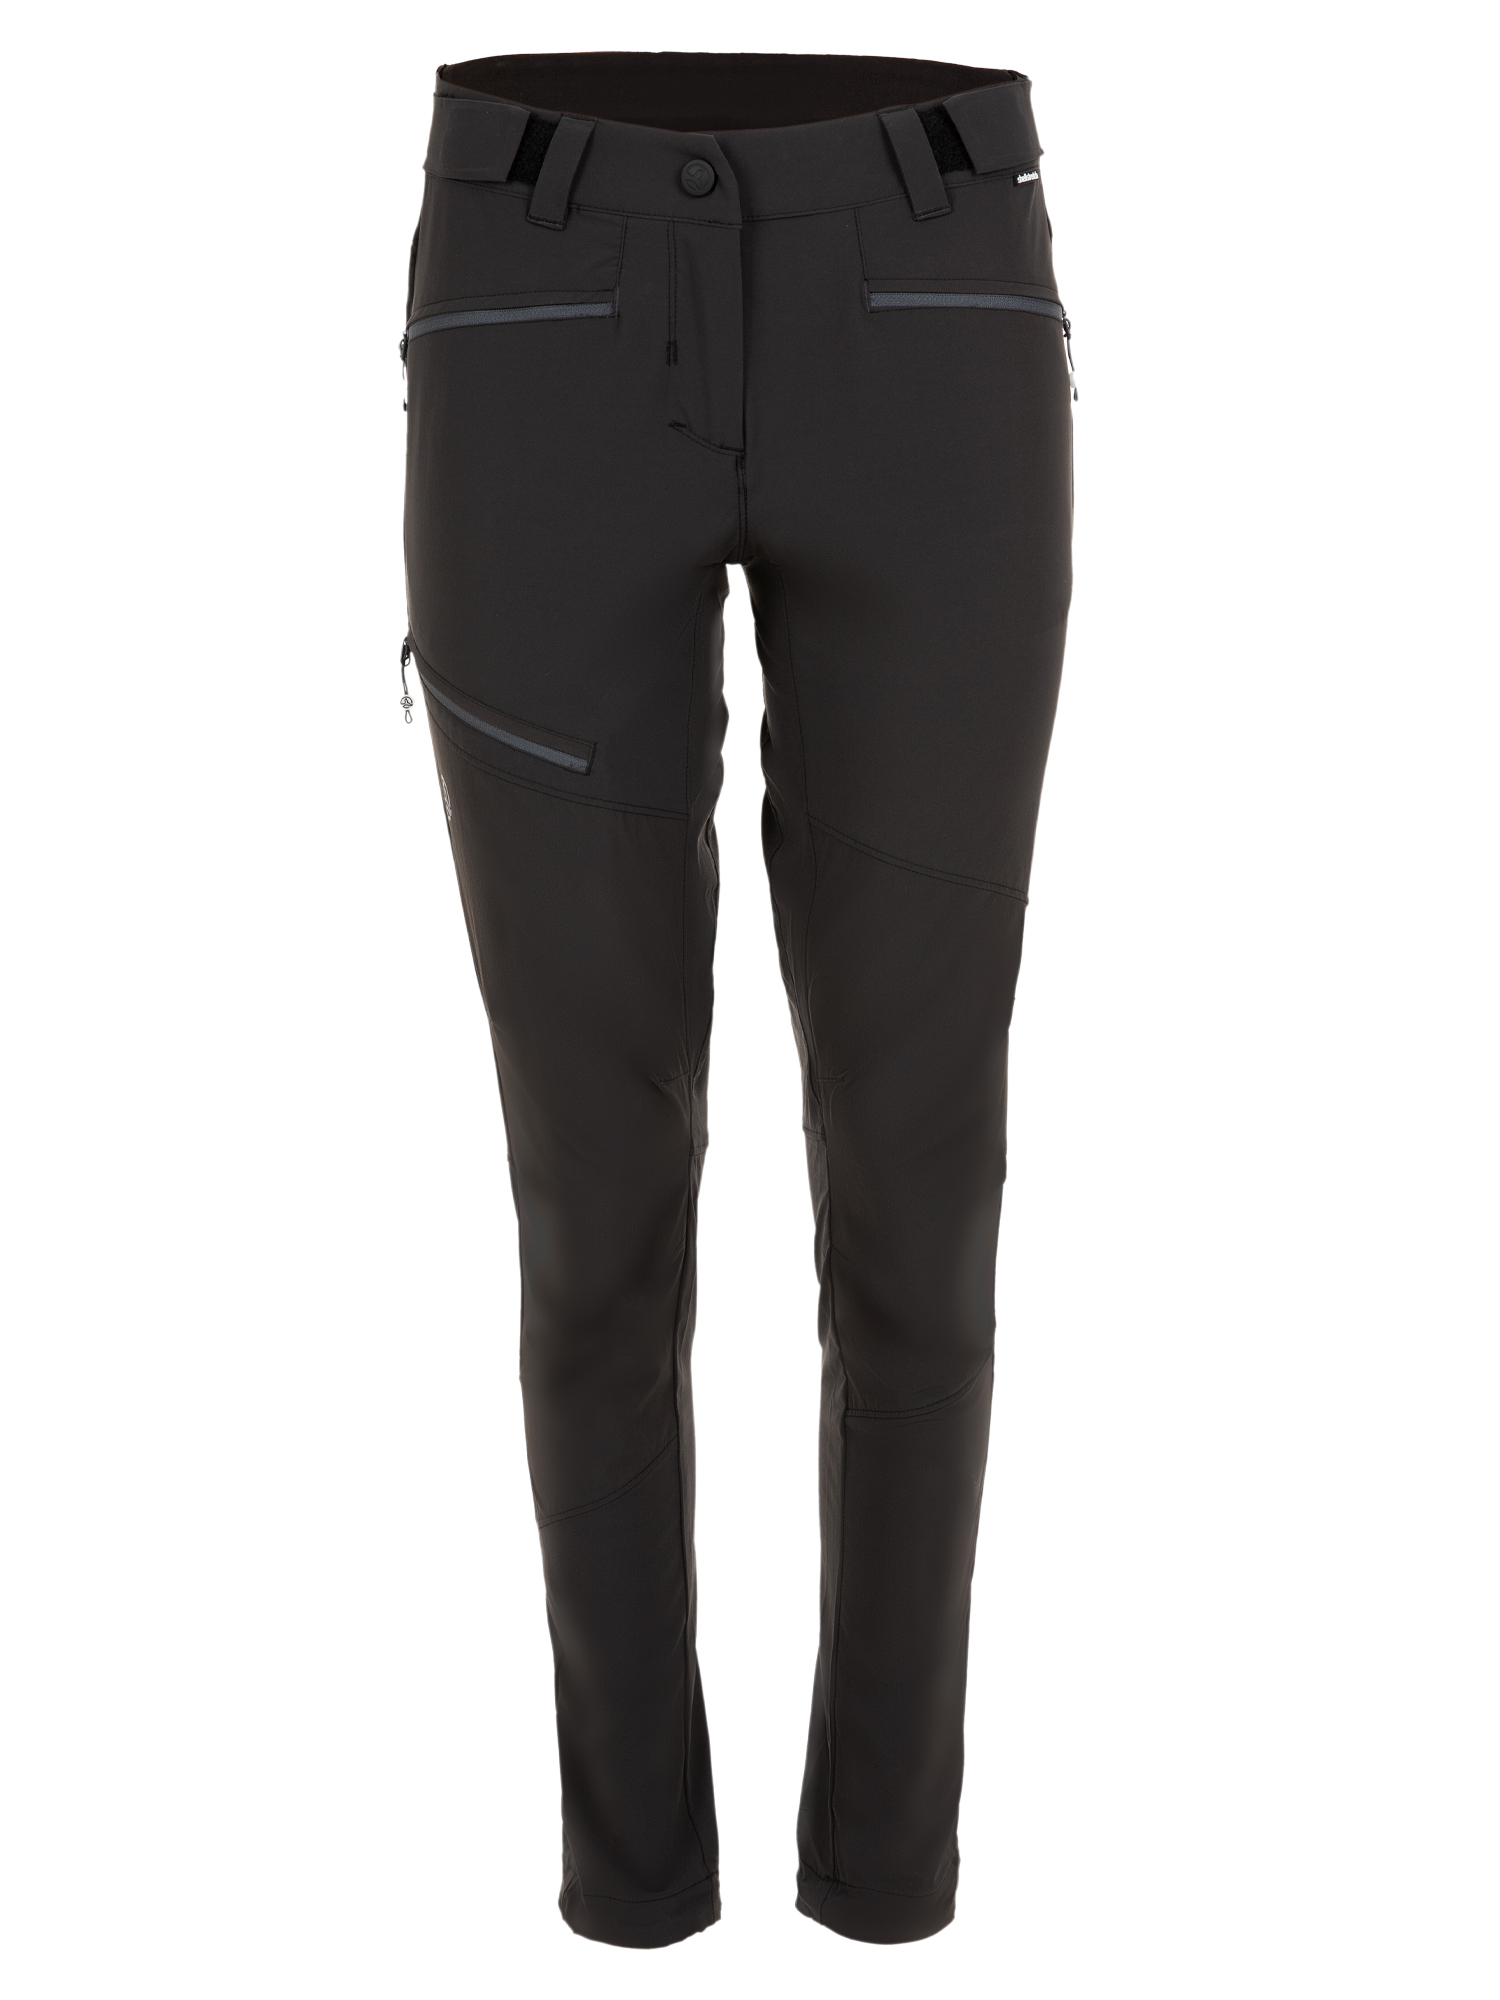 Спортивные брюки женские Ternua Rotar Pt W черные XL